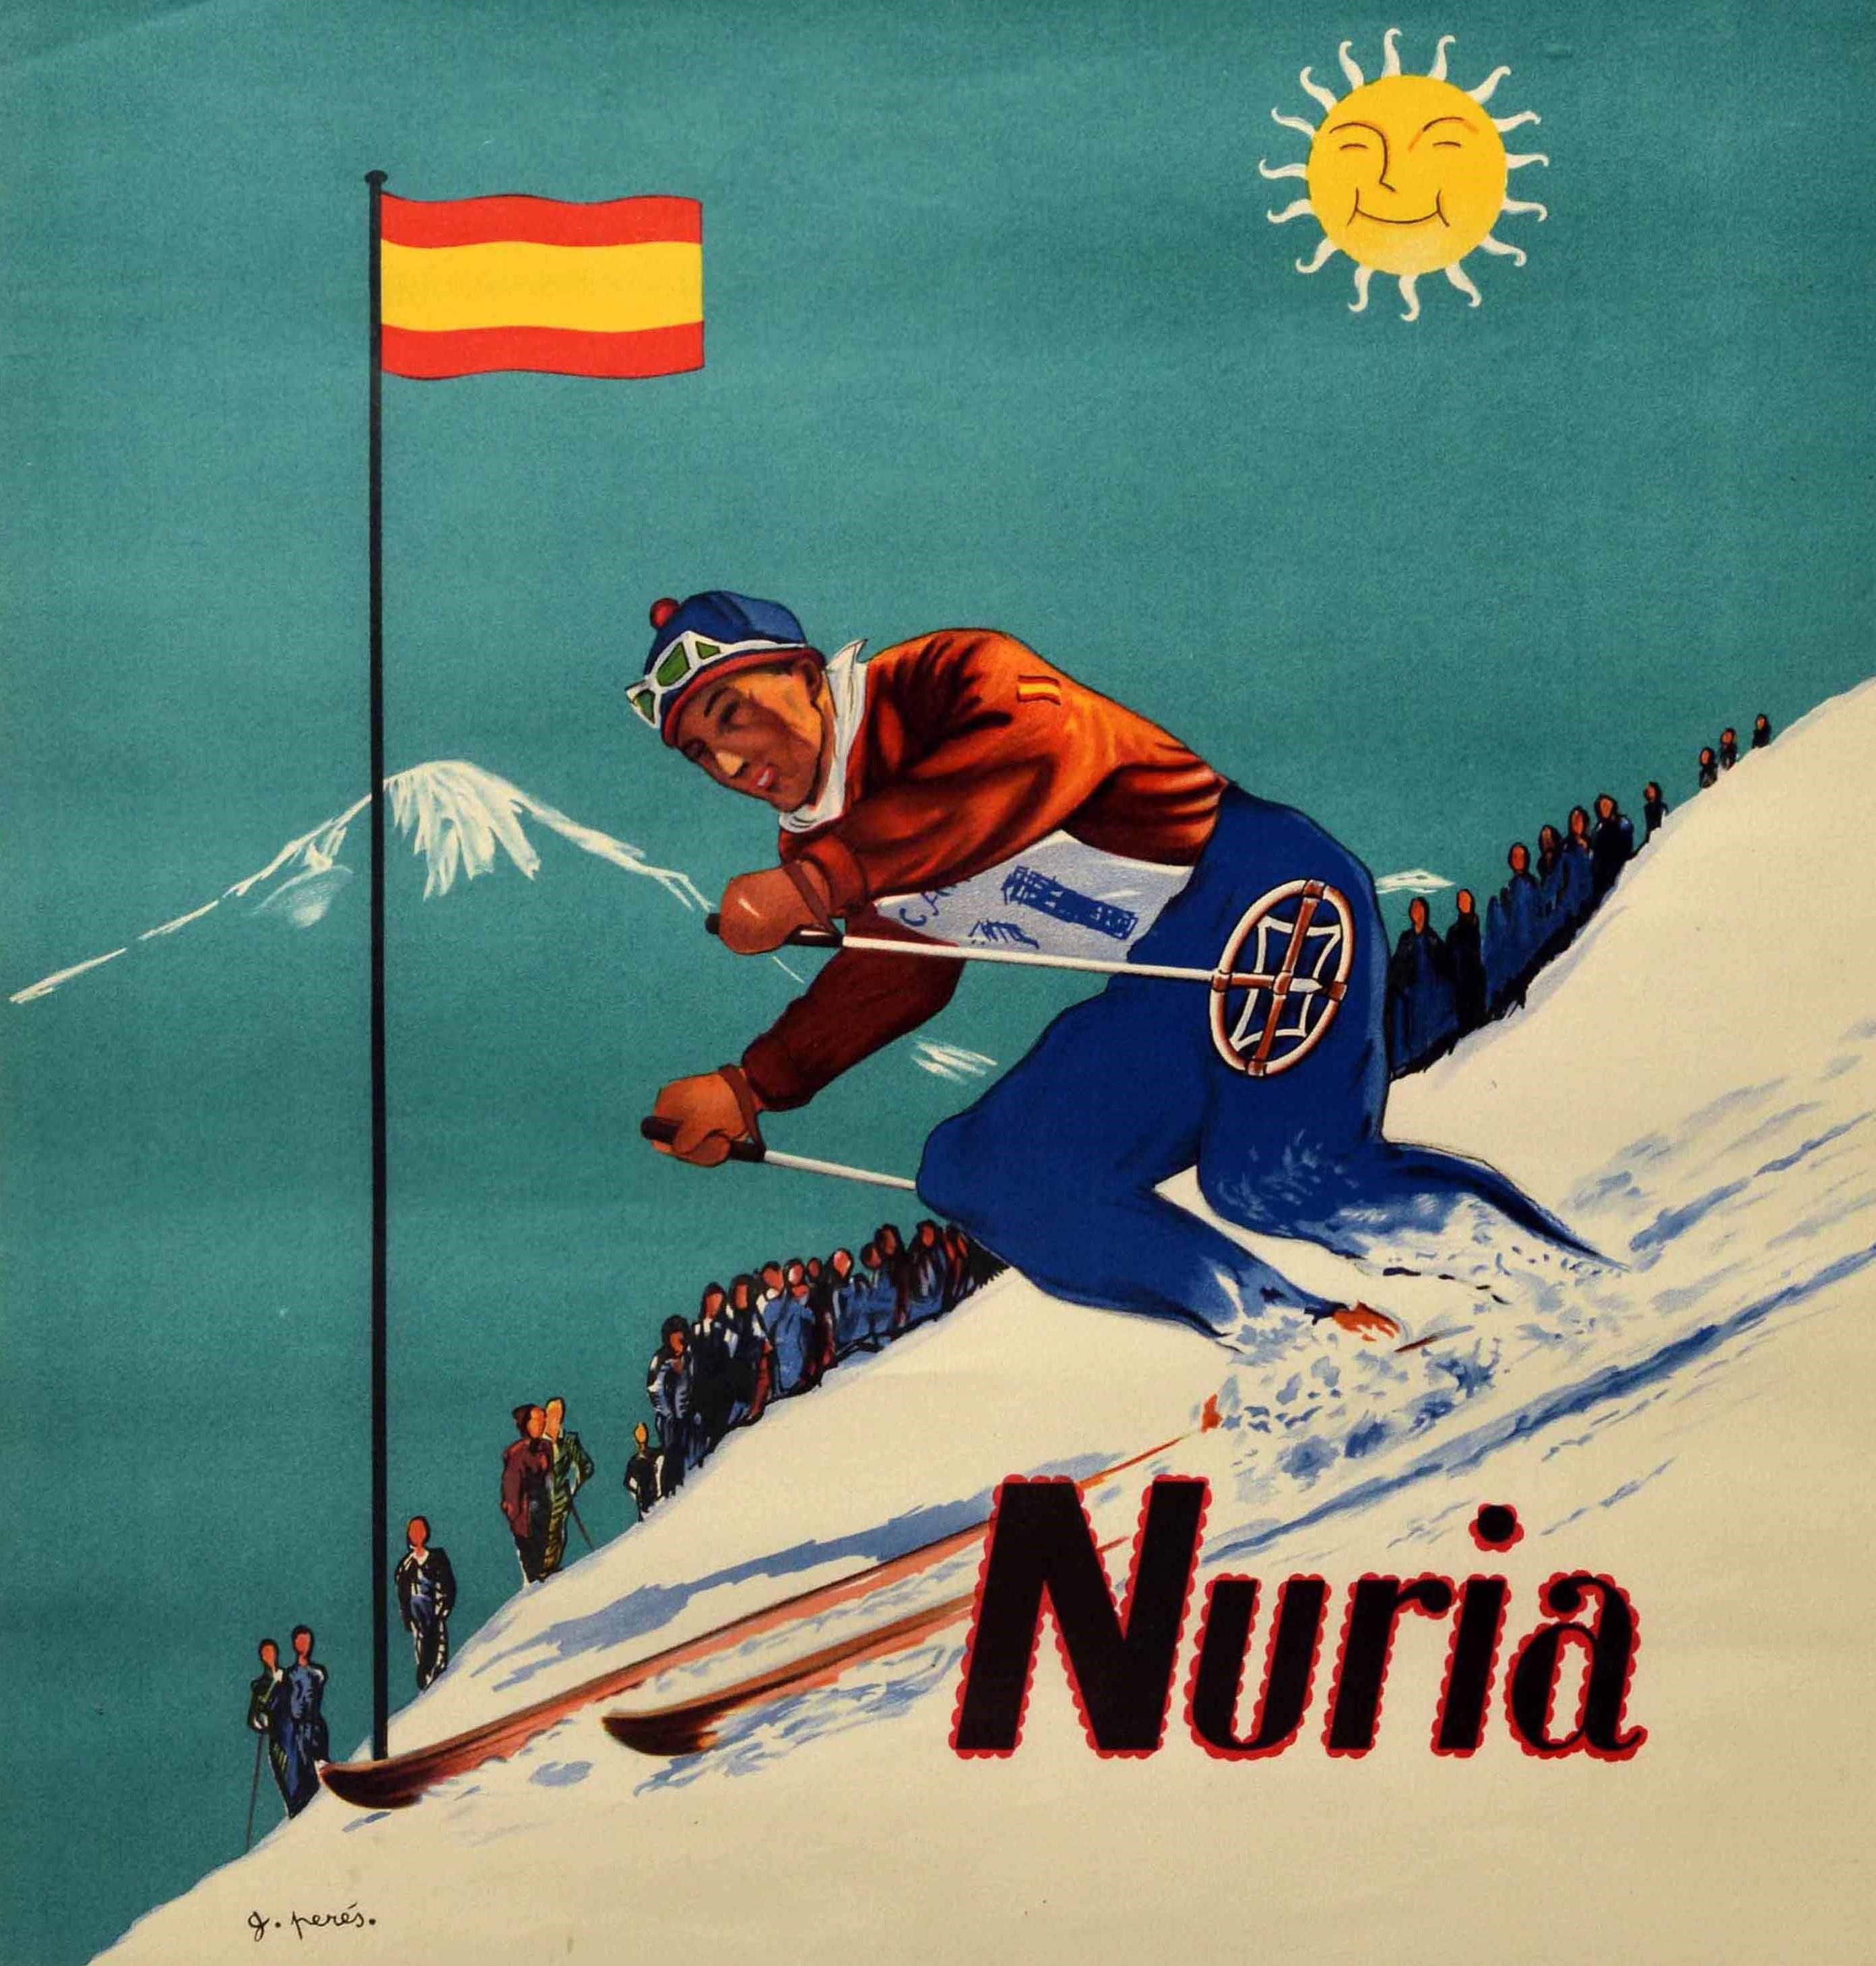 70s ski poster